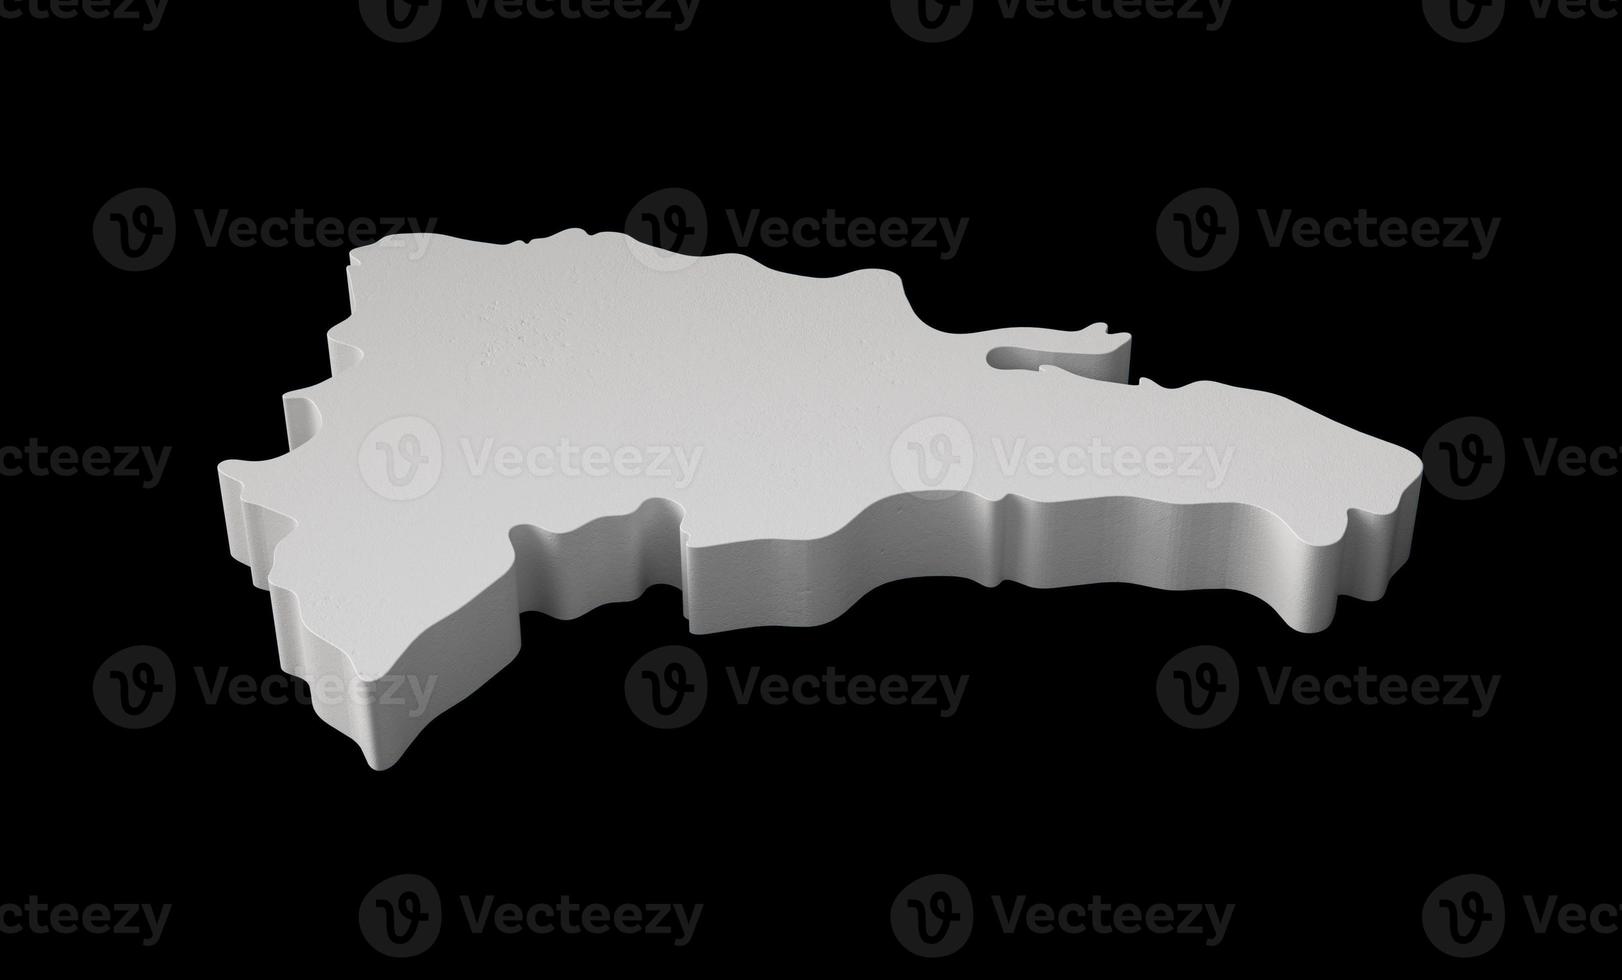 Repubblica dominicana 3d mappa geografia cartografia e topologia illustrazione 3d in bianco e nero foto